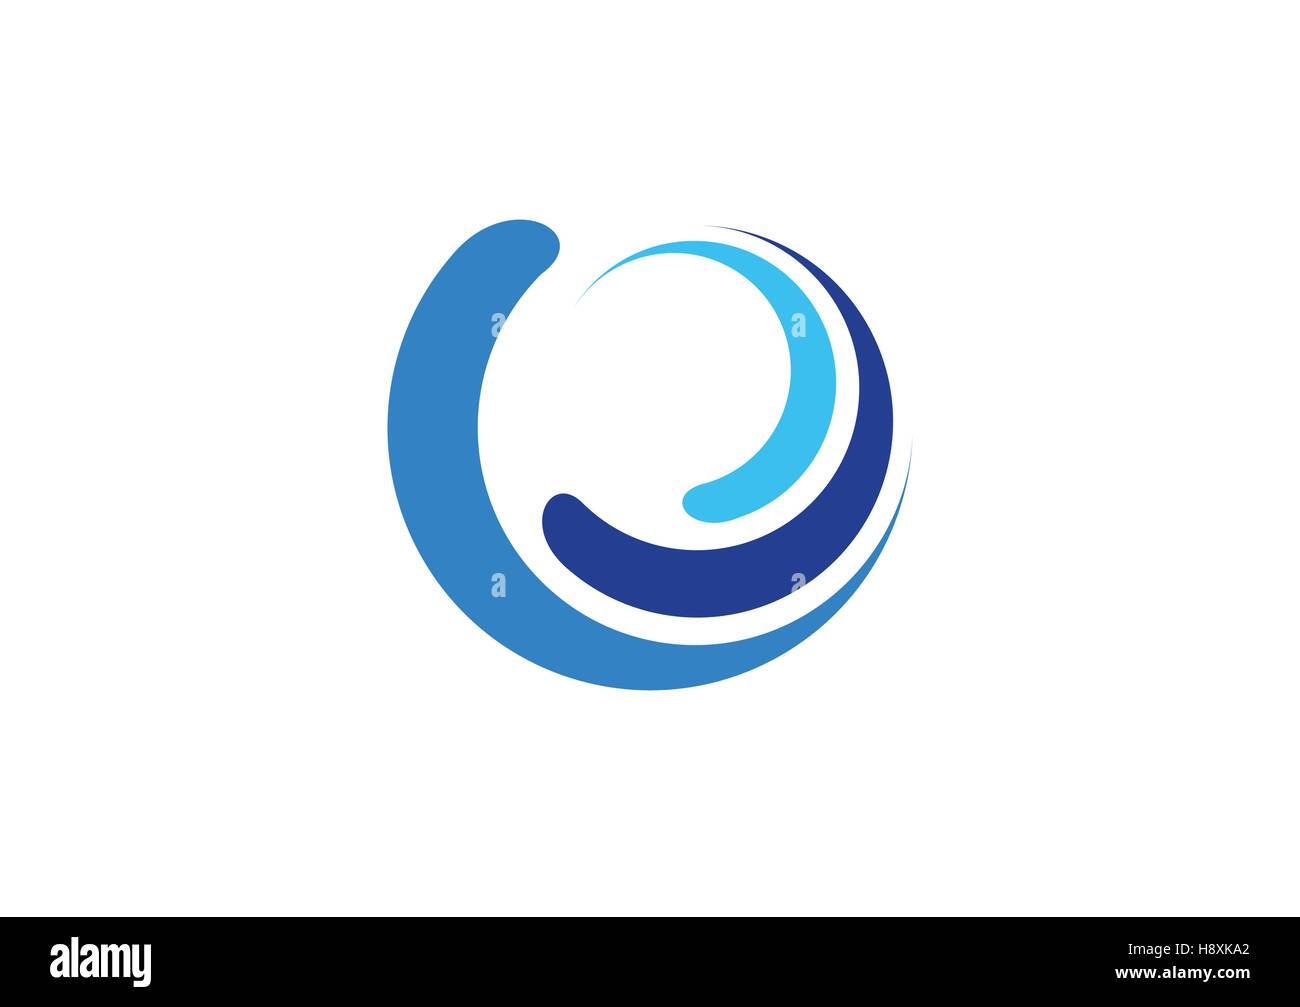 Cerchio logo onde, sfera blu acqua splash simbolo, swirl icona vento disegno vettoriale, blue logo a forma di onda icona di simbolo segno disegno vettoriale Illustrazione Vettoriale